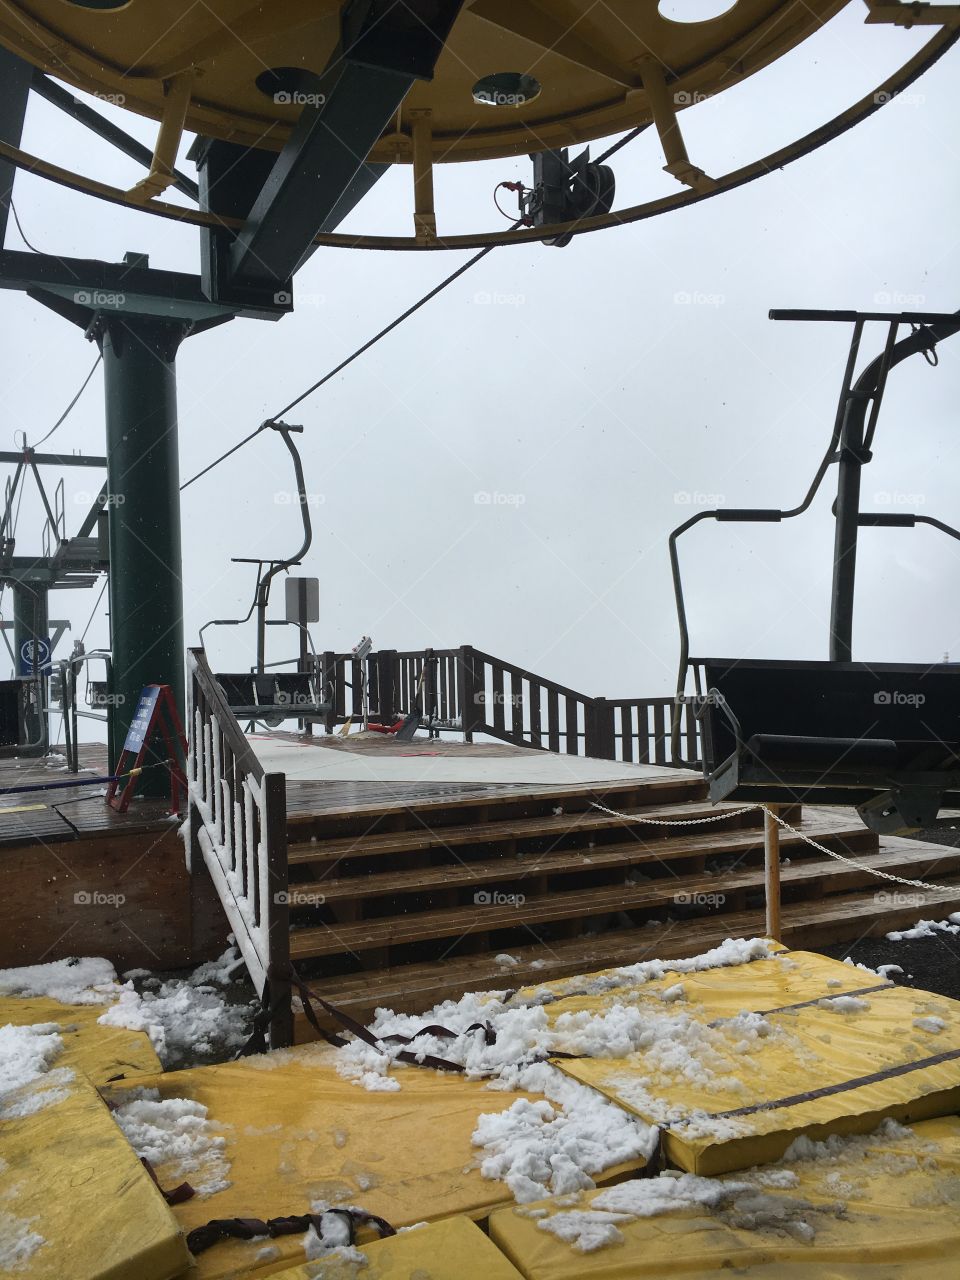 Ski lift in the snow 